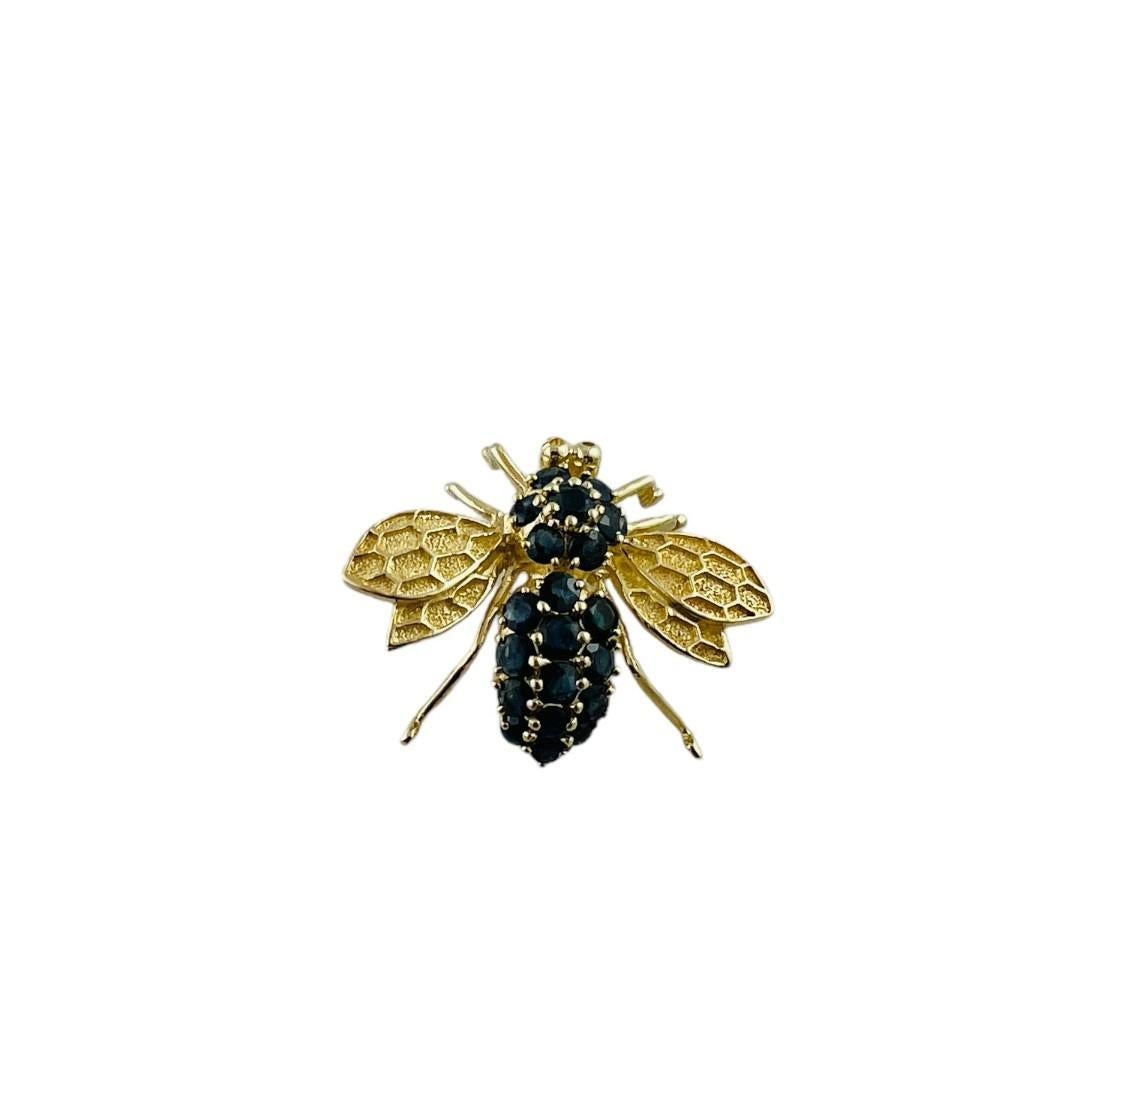 Broche/pendentif abeille en or jaune 14K avec saphir naturel de grande taille

Cette belle abeille peut être portée en broche ou en pendentif.

La broche est sertie en or jaune 14 carats de 20 saphirs naturels bleu foncé.

24.9. x 31.7 x 12.3